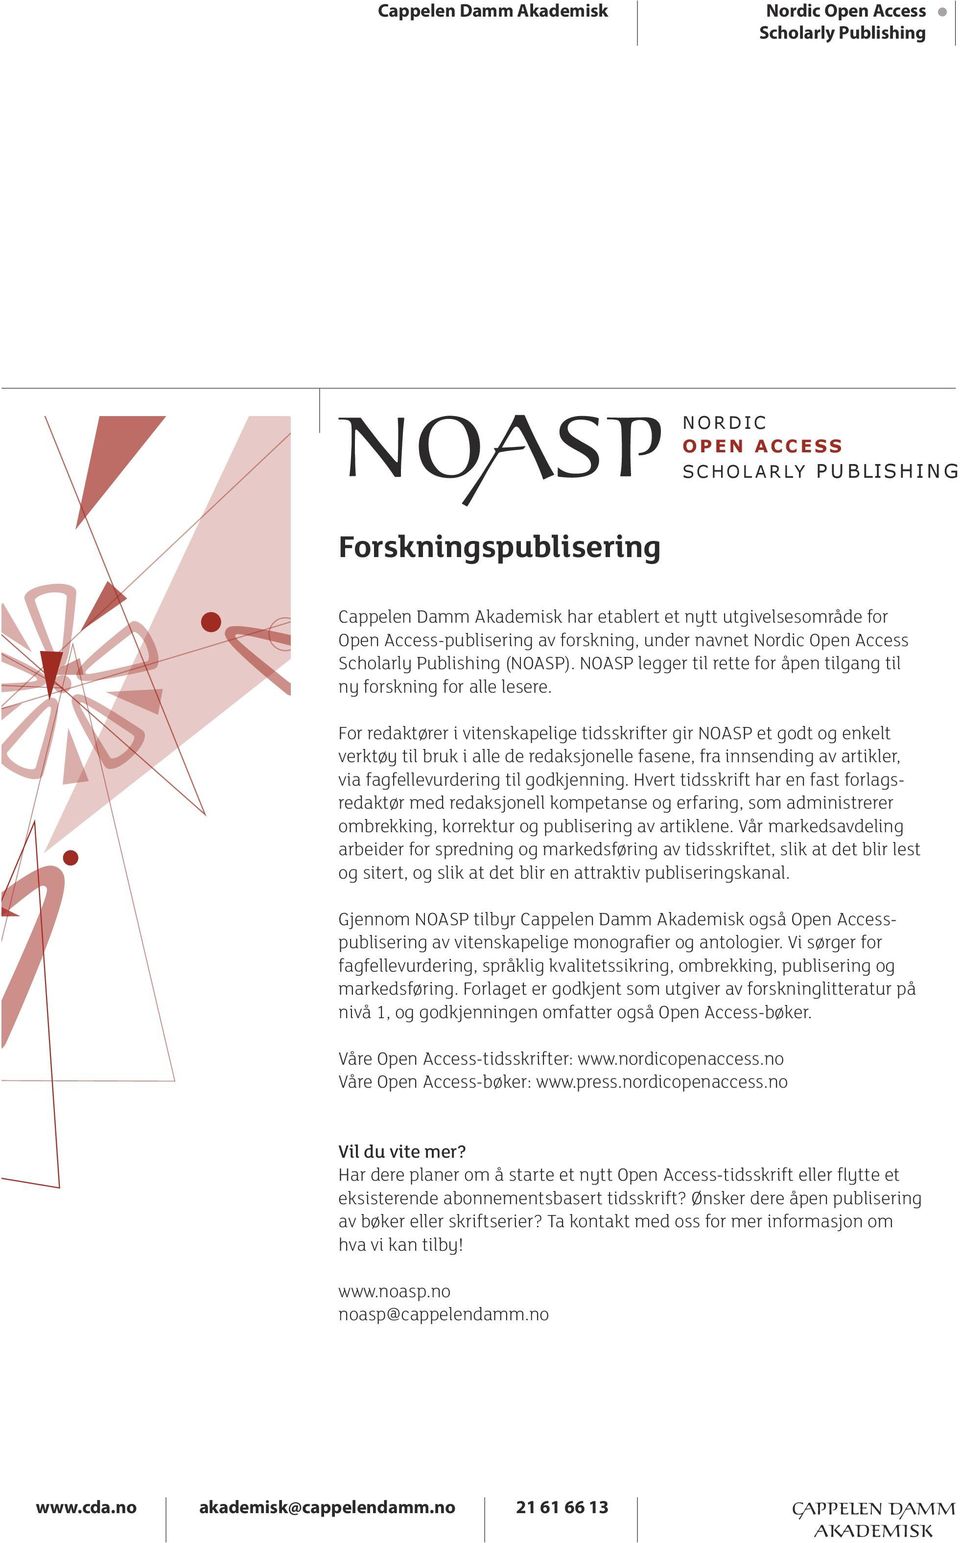 For redaktører i vitenskapelige tidsskrifter gir NOASP et godt og enkelt verktøy til bruk i alle de redaksjonelle fasene, fra innsending av artikler, via fagfellevurdering til godkjenning.